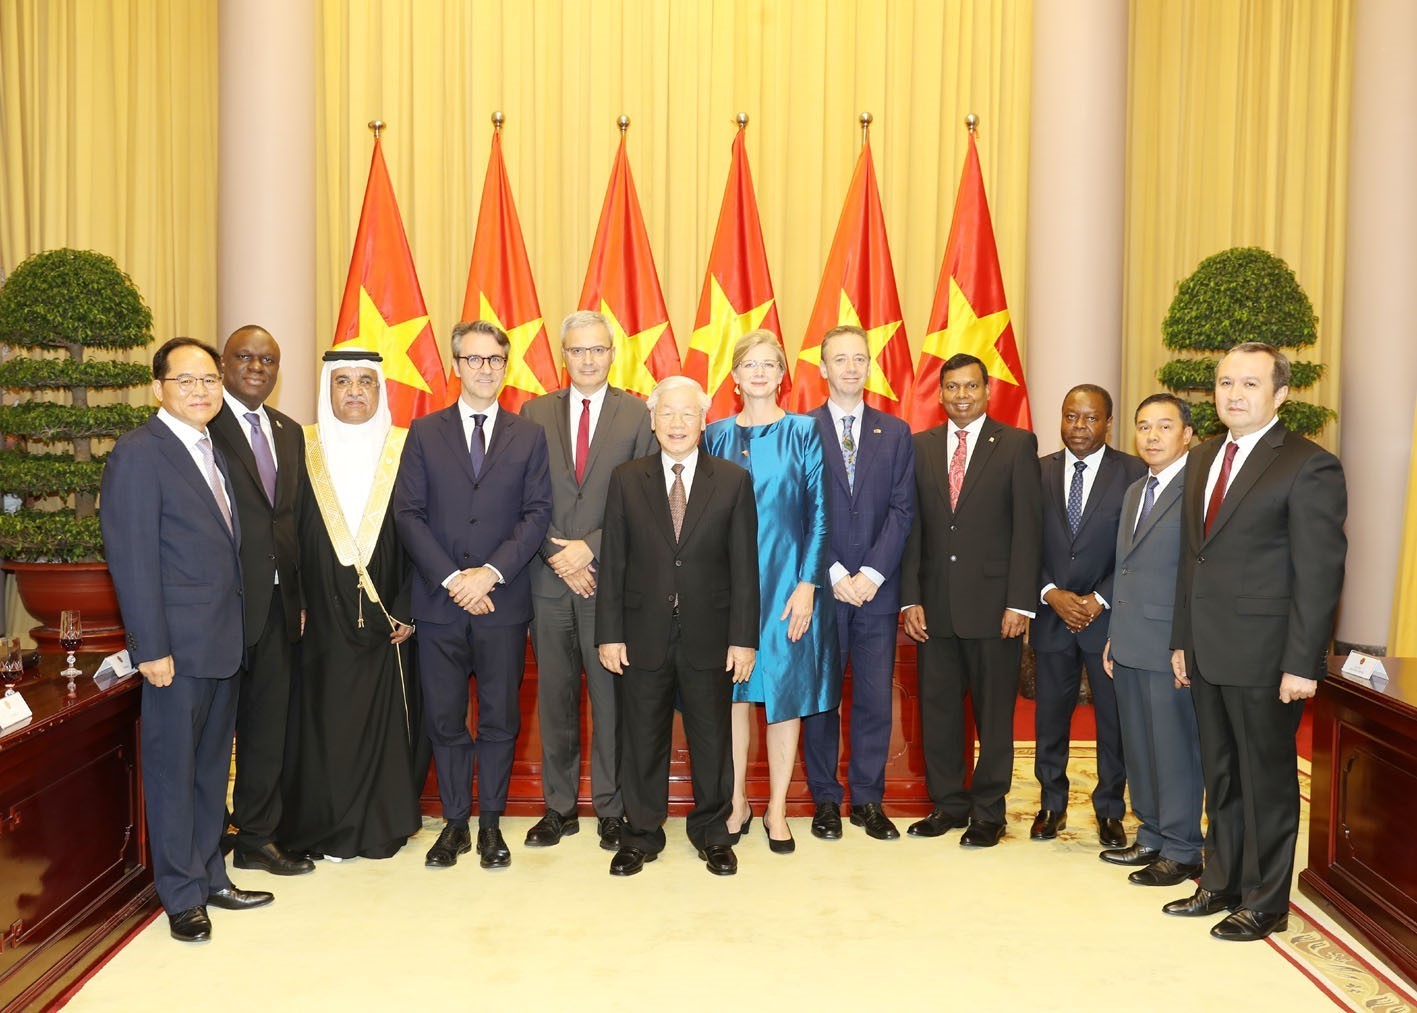 Tổng Bí thư, Chủ tịch nước Nguyễn Phú Trọng chụp ảnh chung với các đại sứ đến nhận nhiệm kỳ công tác tại Việt Nam_Ảnh: TTXVN